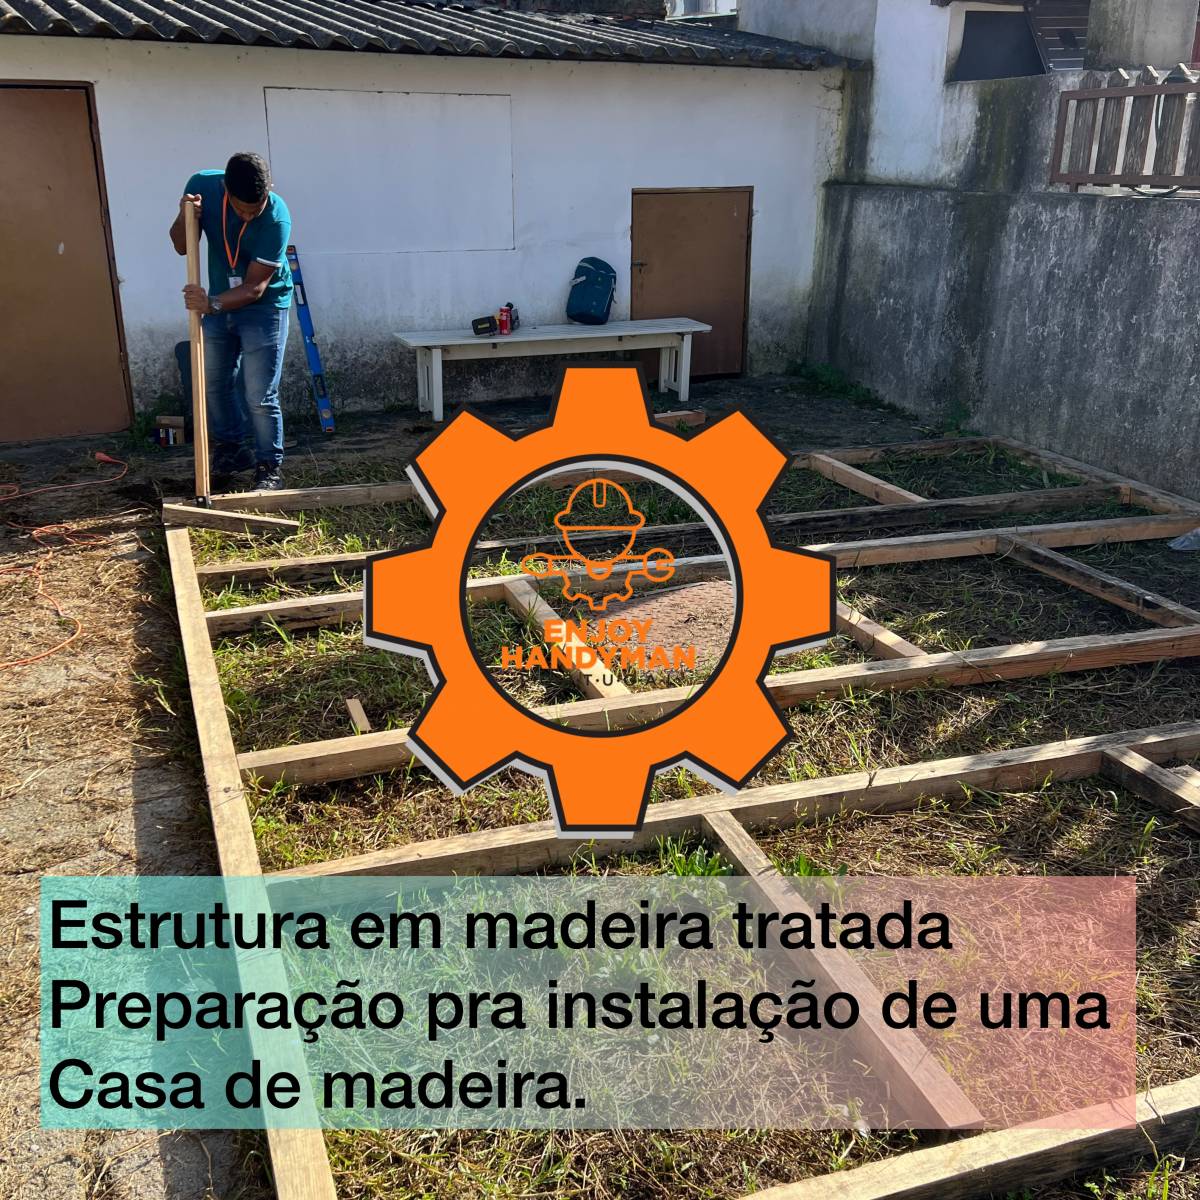 Enjoy Handyman Portugal (JorgeLuiz&EnedinnaSantos) - Vila Nova de Gaia - Reparação de Banheira e Chuveiro